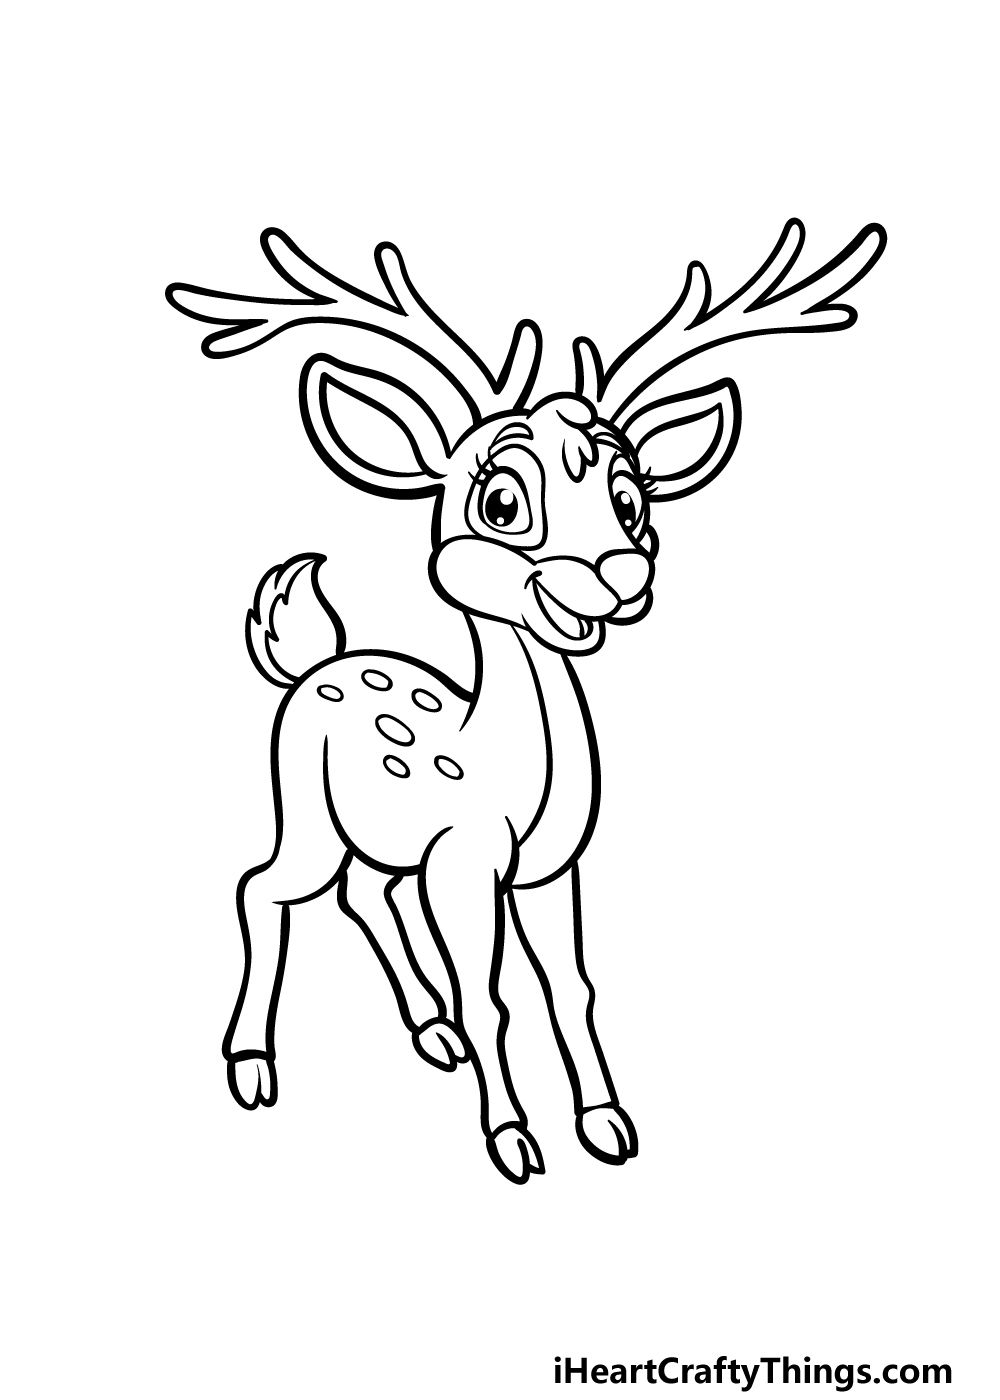 Cartoon Deer Drawing - How To Draw A Cartoon Deer Step By Step